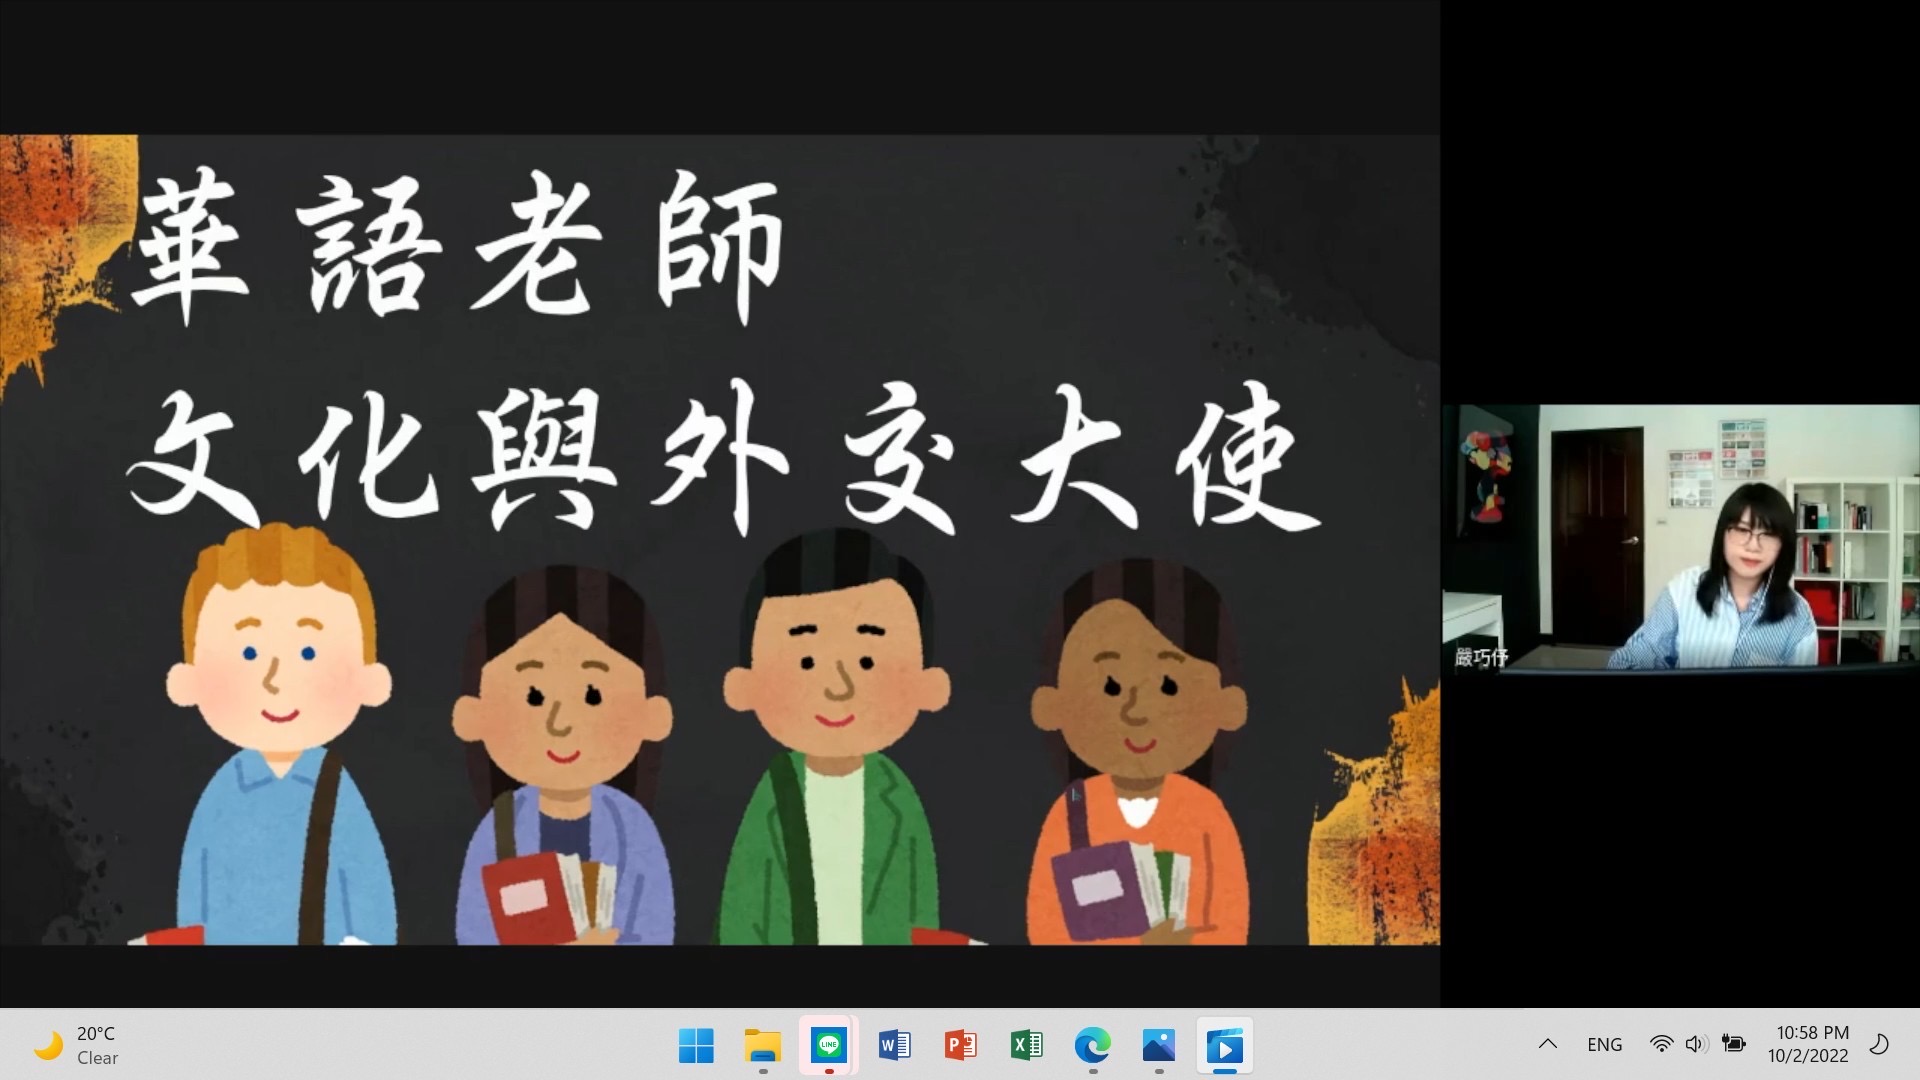 嚴巧伃_數位文化資源導入華語文教學課程